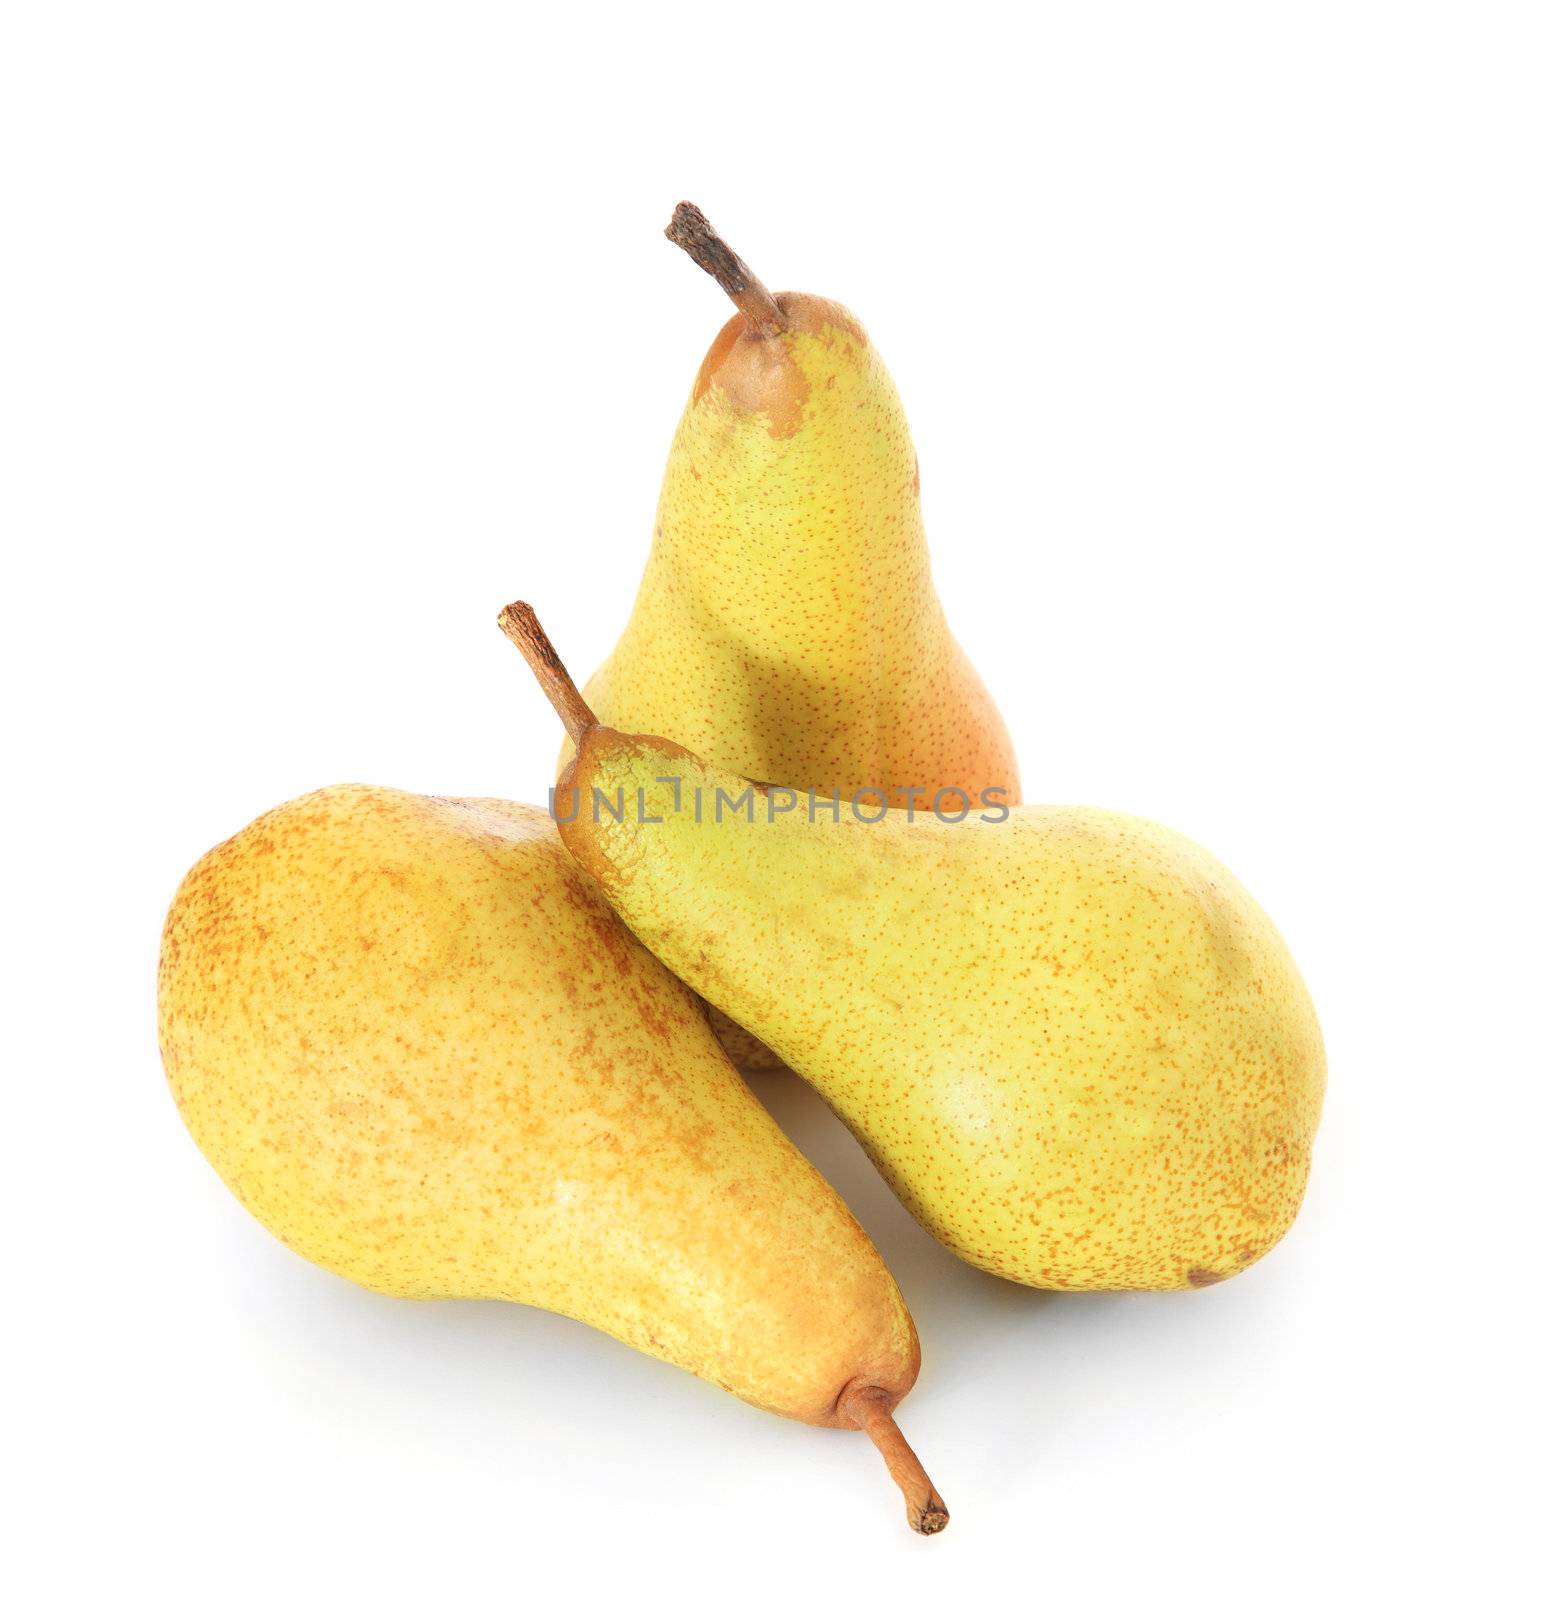 Pears by kaarsten